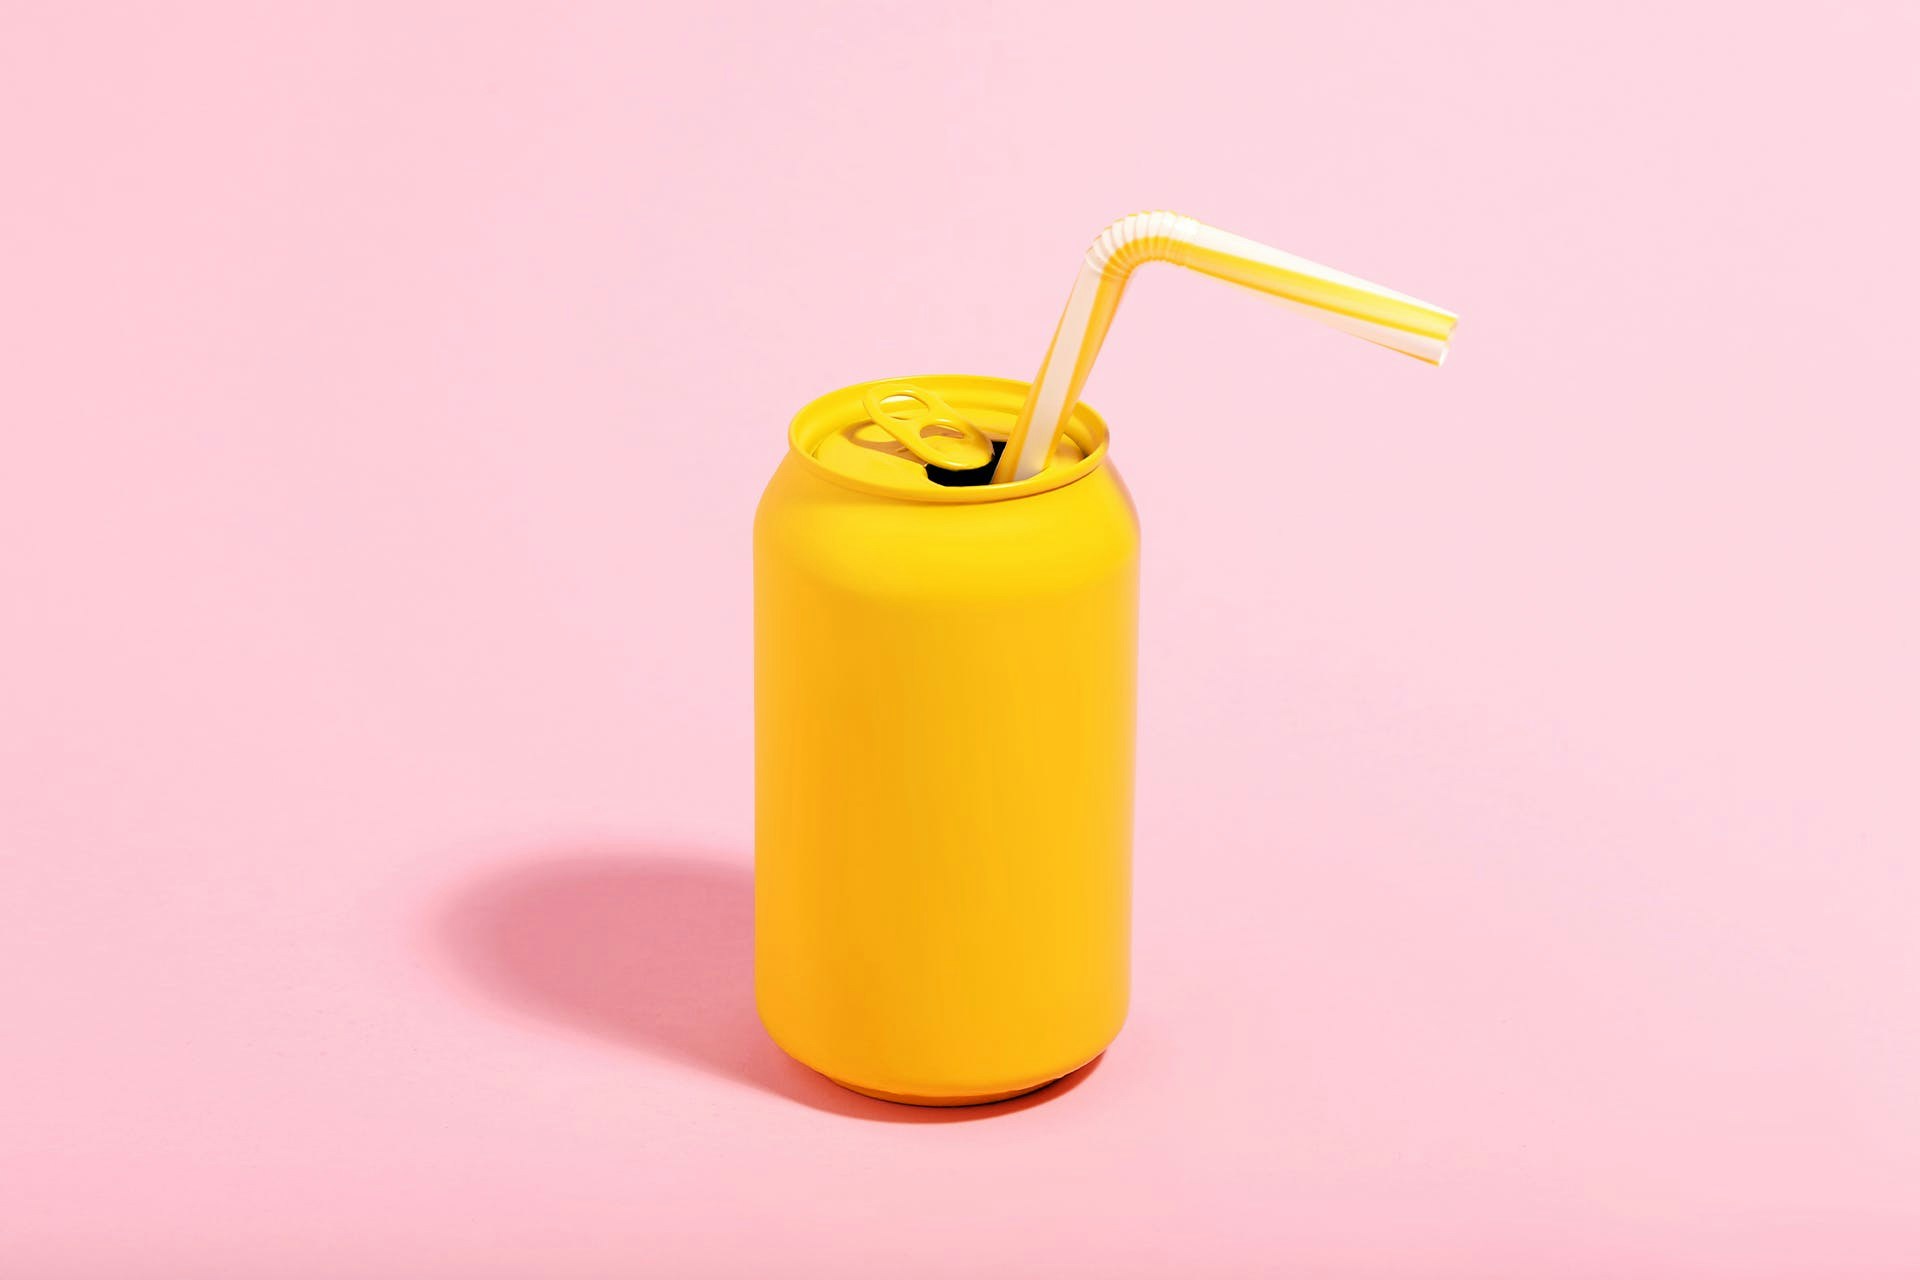 Foto einer gelben Dose mit gelbem Strohhalm darin vor einem rosanen Hintergrund. Das ist das Titelbild für unseren Beitrag zum Thema Brand Ambassadors, Corporate Influencer und Markenbotschafter